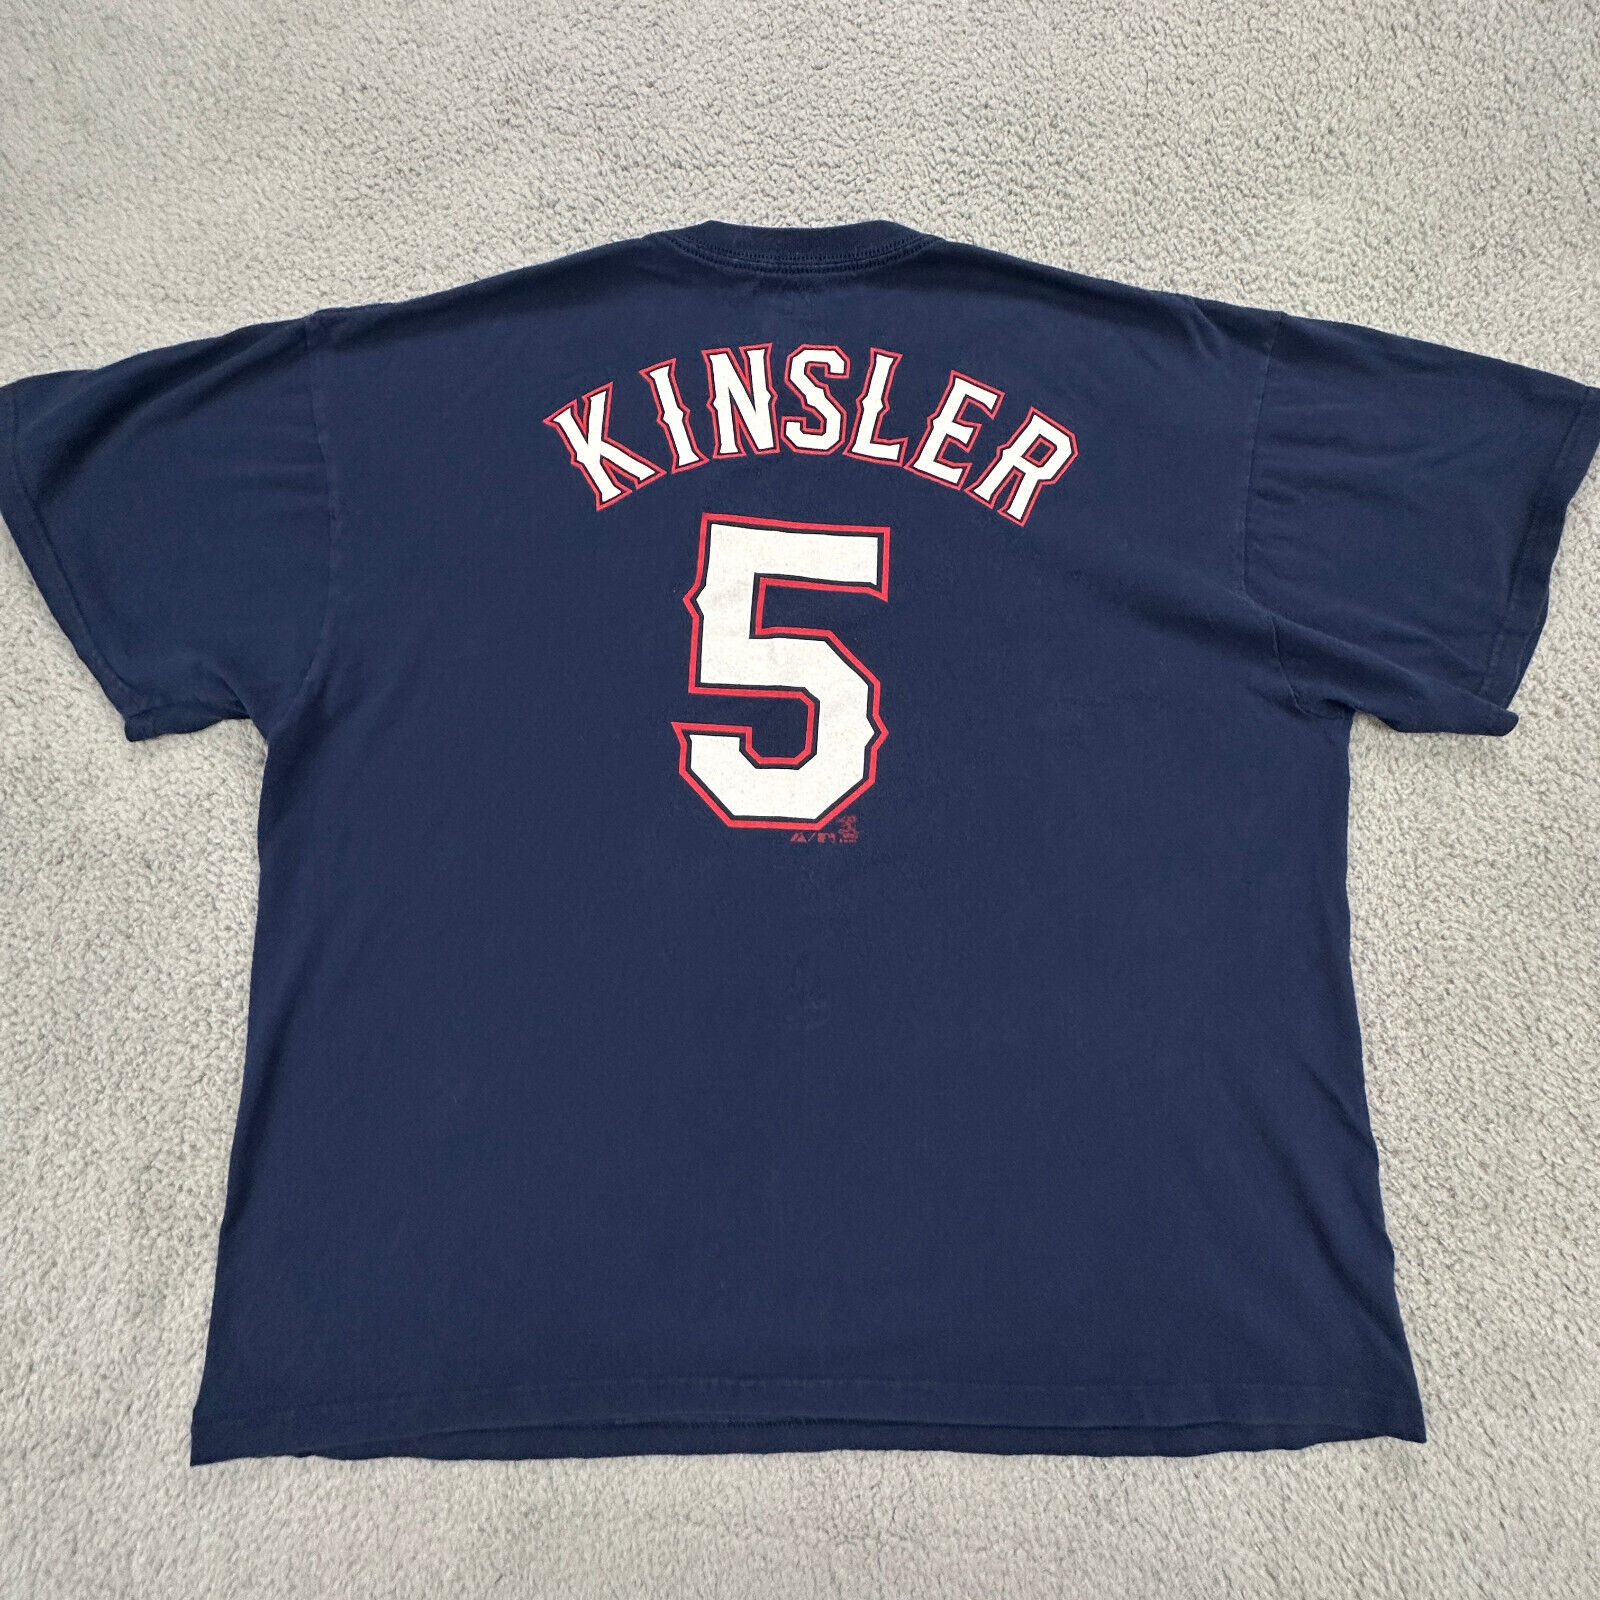 Ian Kinsler Jersey Shirt Adult 2XL Blue Texas Rangers Short Sleeve #5 MLB Mens